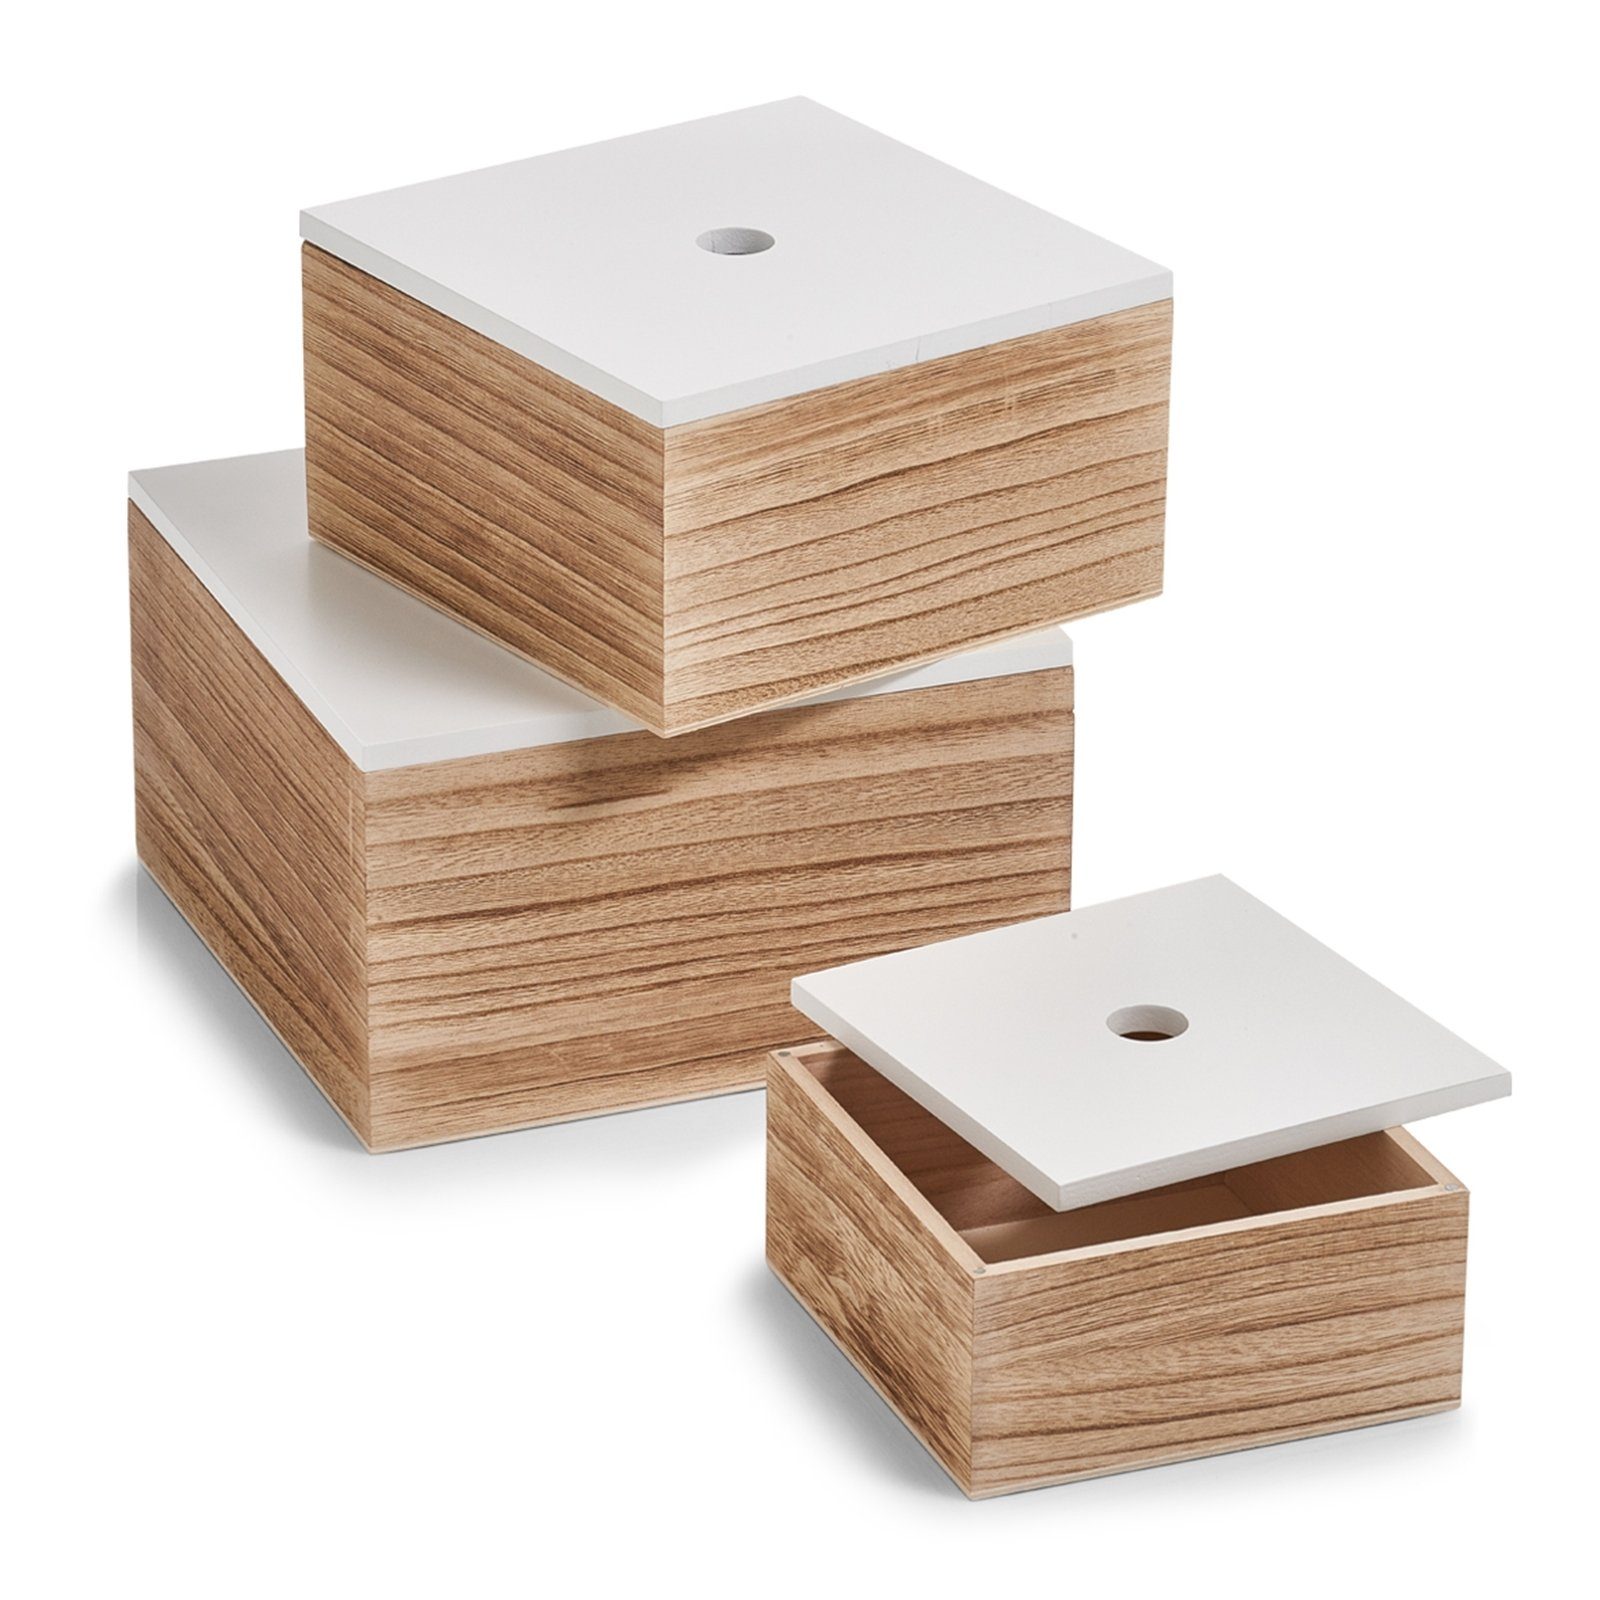 HTI-Living Aufbewahrungsbox Aufbewahrungsboxen-Set Holz 3-teilig (3 St., 3 Boxen in verschiedenen Größen mit Deckel)